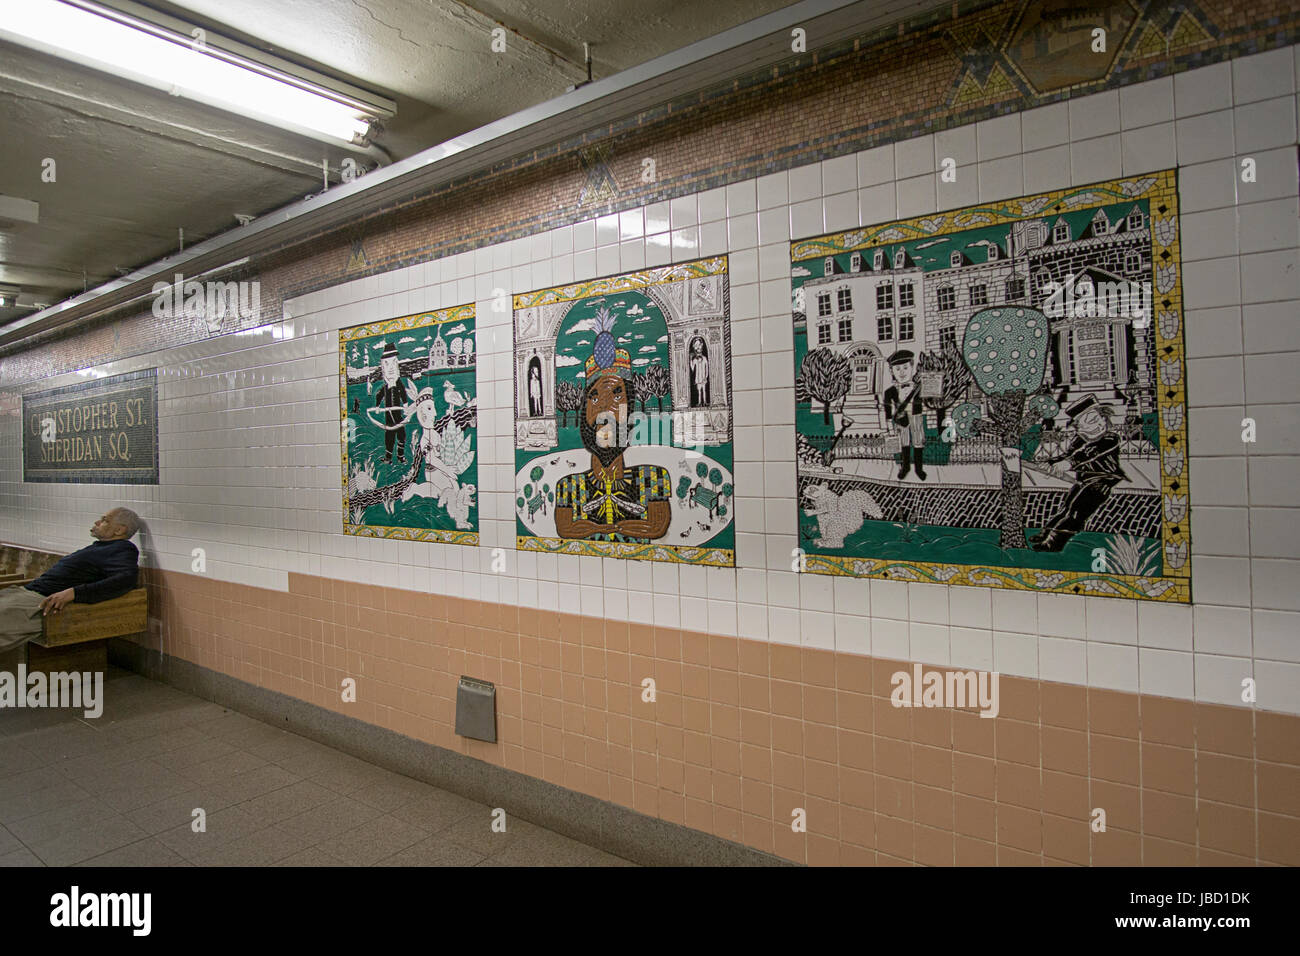 L'art du métro sur la plate-forme de la Christopher St. Sheridan Square subway station sur la ligne n°1 à Manhattan, New Stock Photo Subway art sur l'platf Banque D'Images